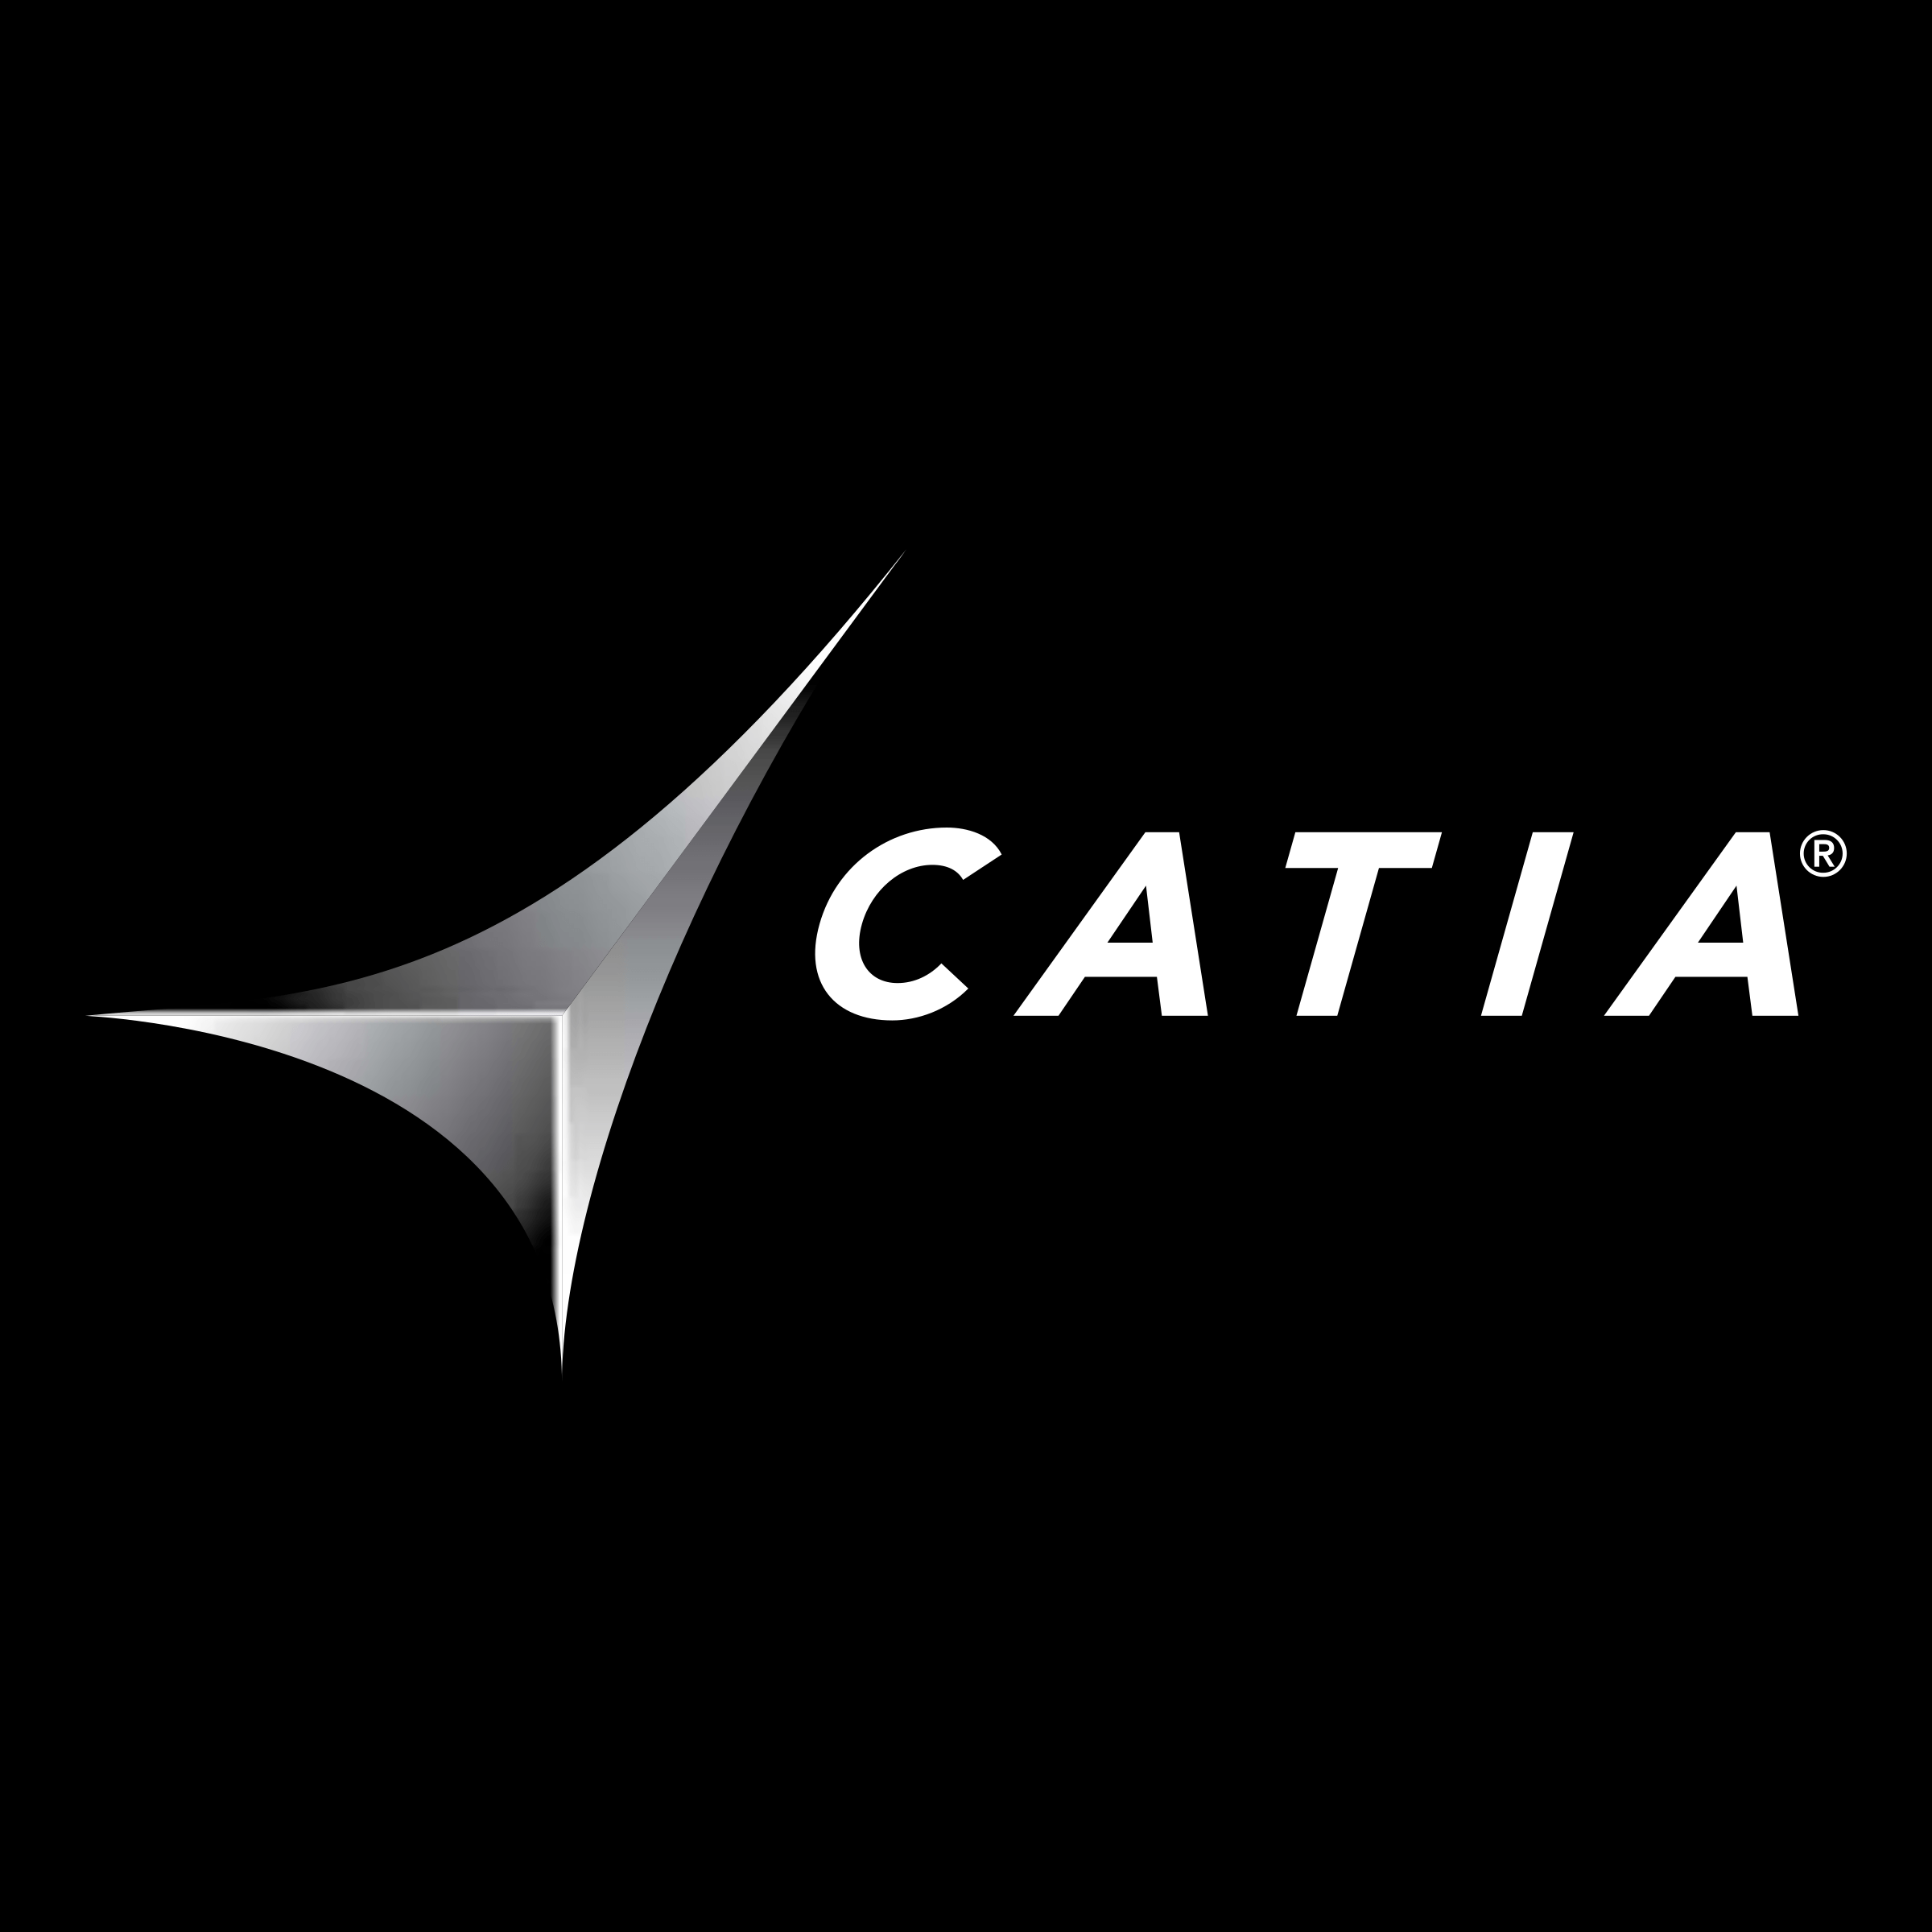 Catia Logo - Catia Solutions Logo PNG Transparent & SVG Vector - Freebie Supply